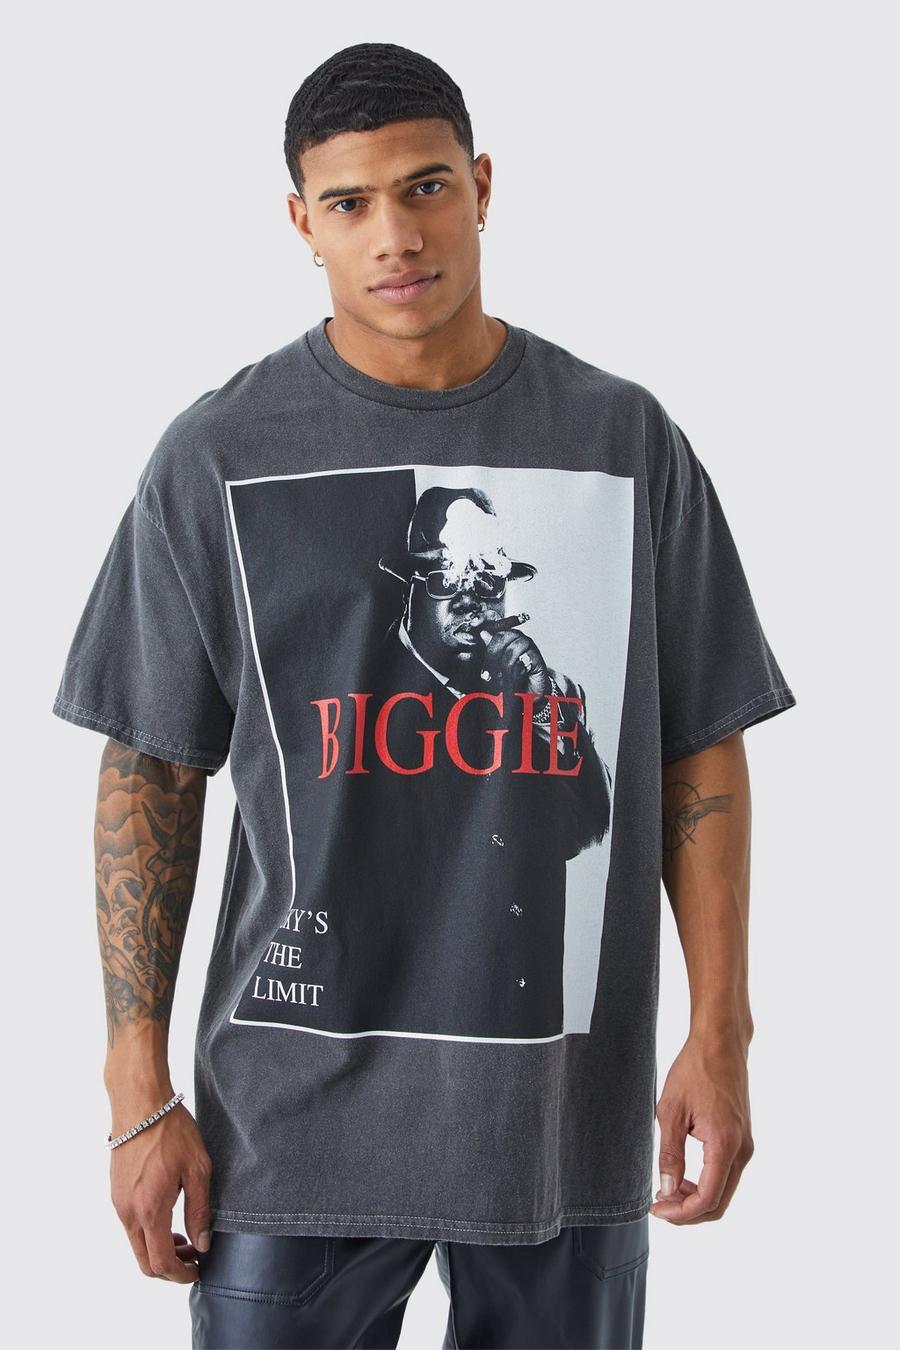 T-shirt oversize surteint à imprimé Biggie, Charcoal gris